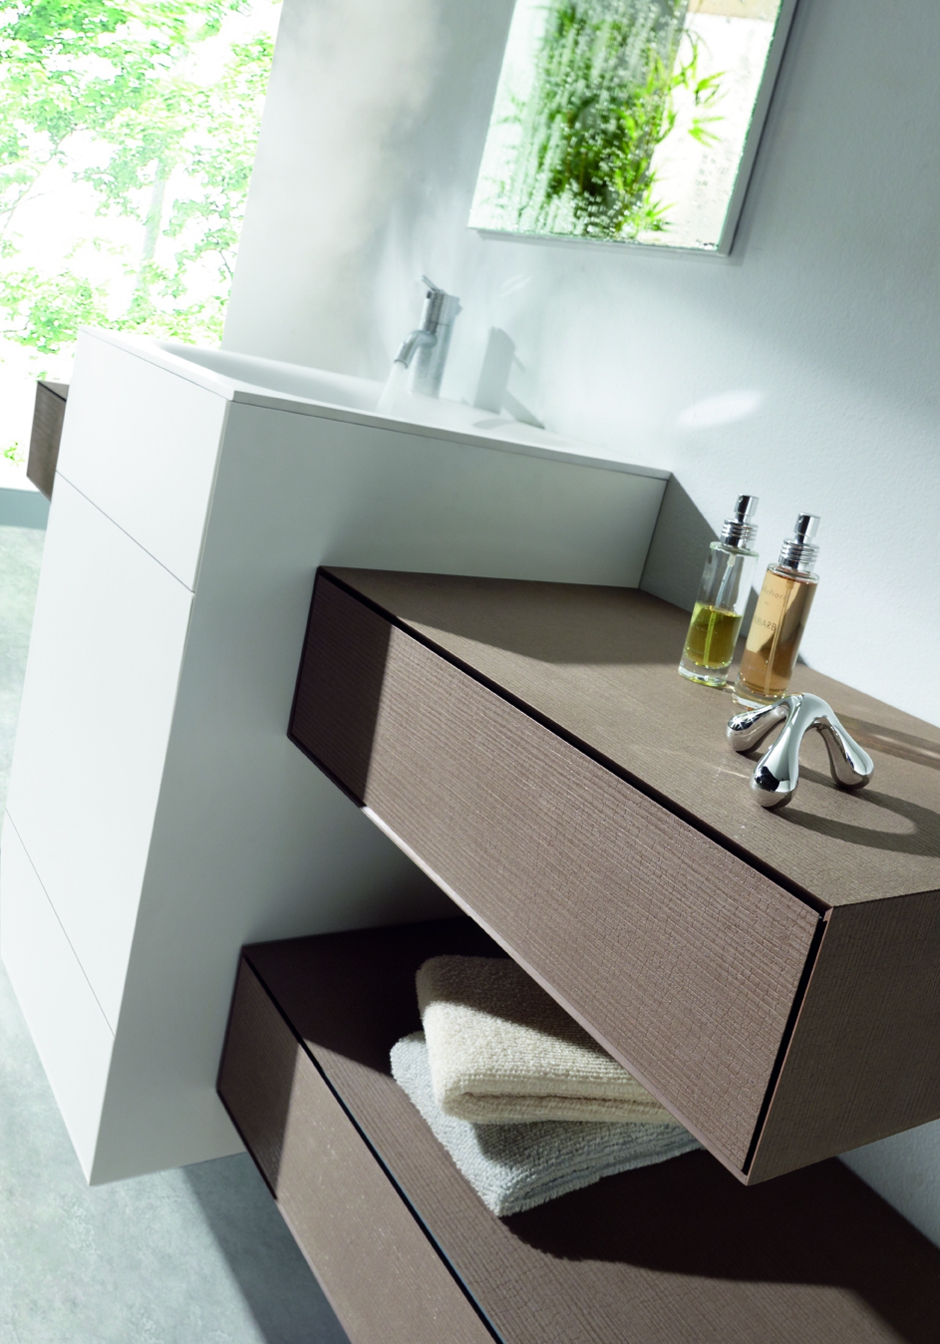 Mueble de baño OLA de discoh design con laminados HPL arpa naturalia marna n03 y solid core KP